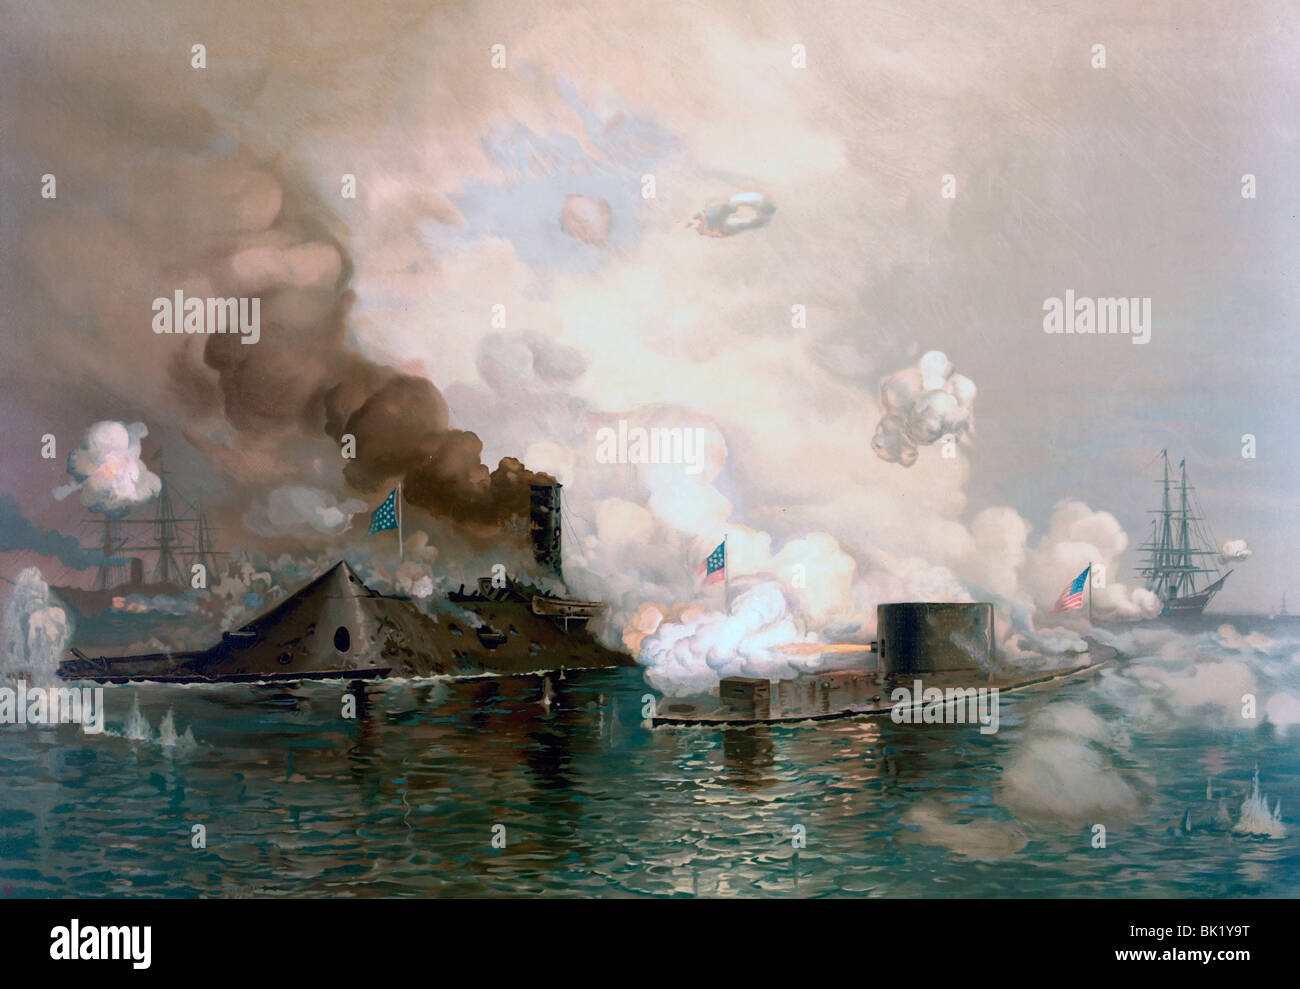 Le moniteur vs la Merrimac - Bataille de Hampton Roads - mars 8-9, 1862 - Bataille de la guerre civile de cuirassés - USA Banque D'Images